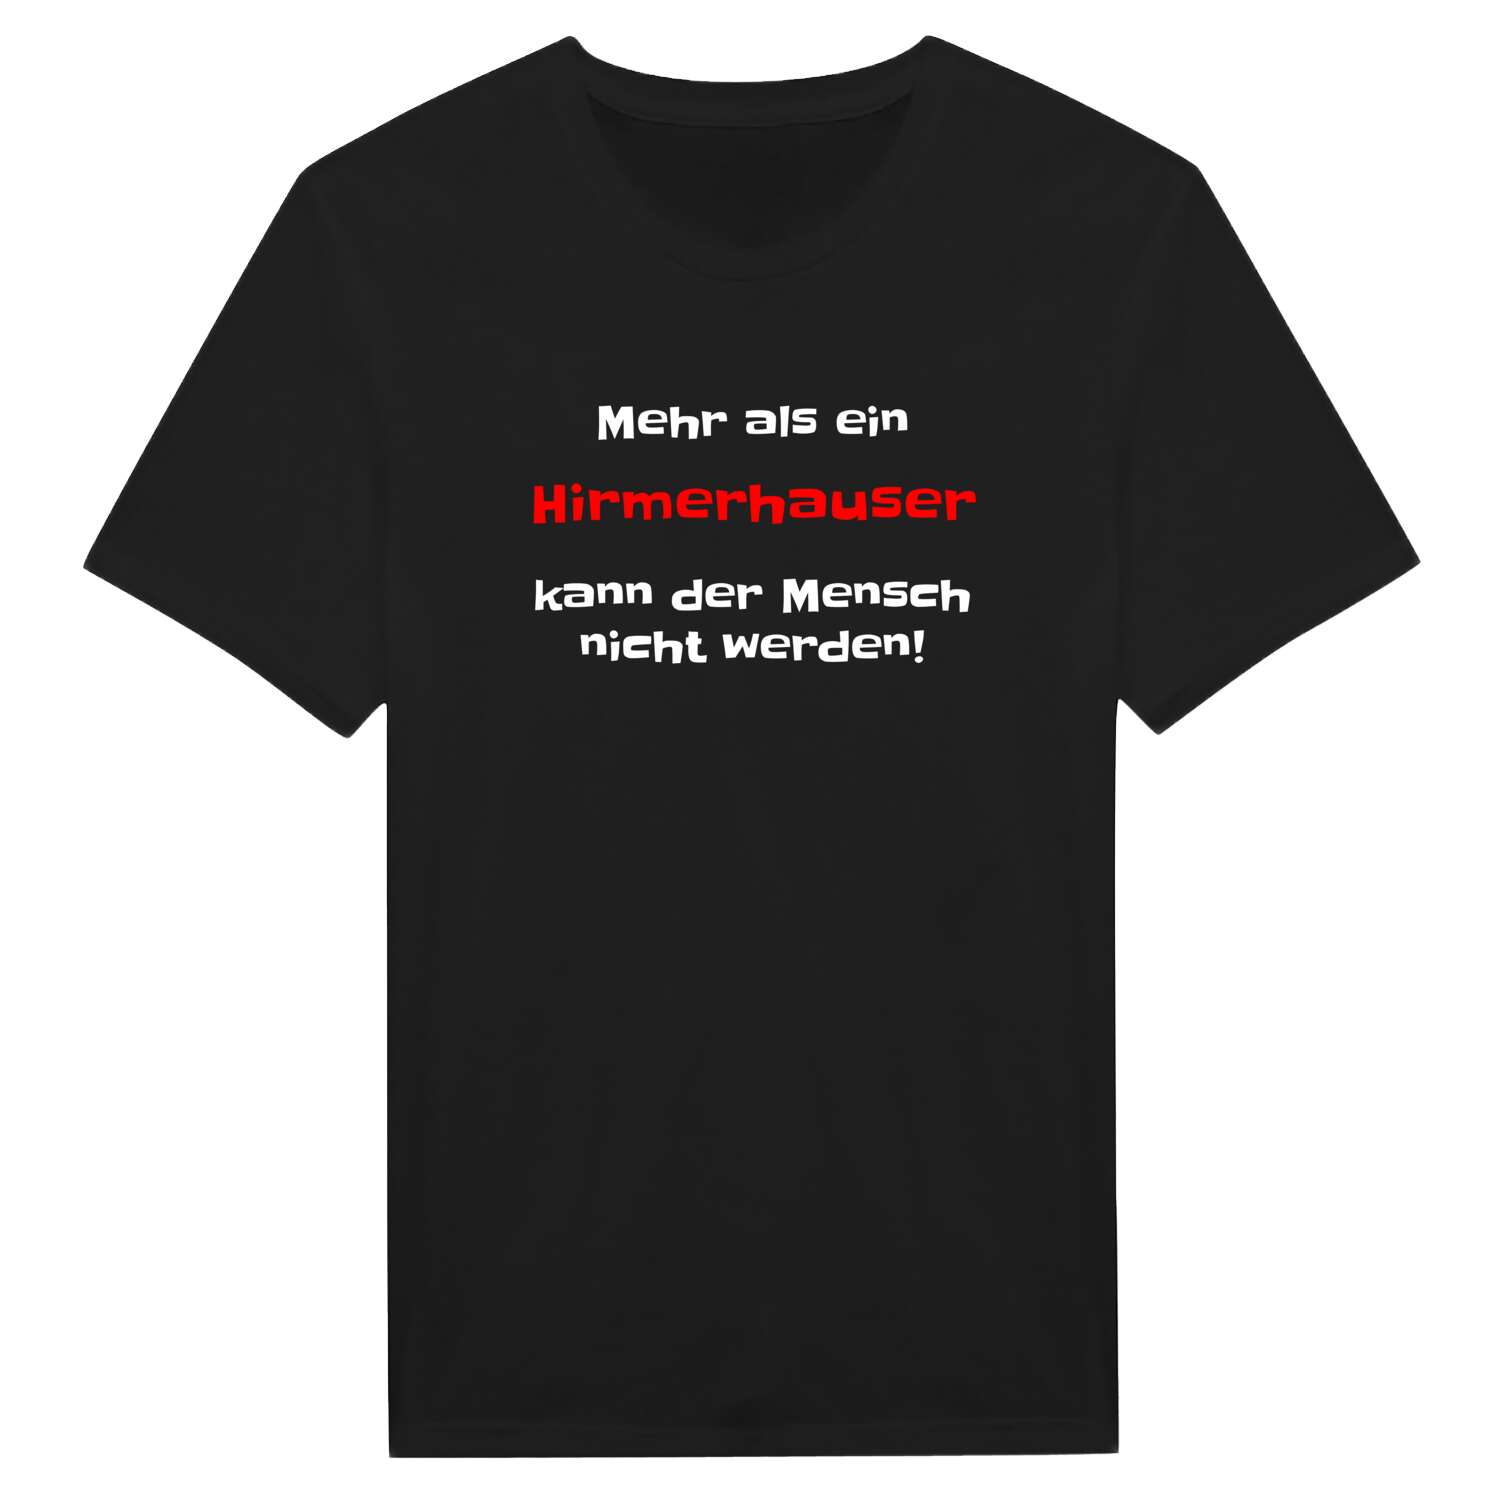 Hirmerhaus T-Shirt »Mehr als ein«